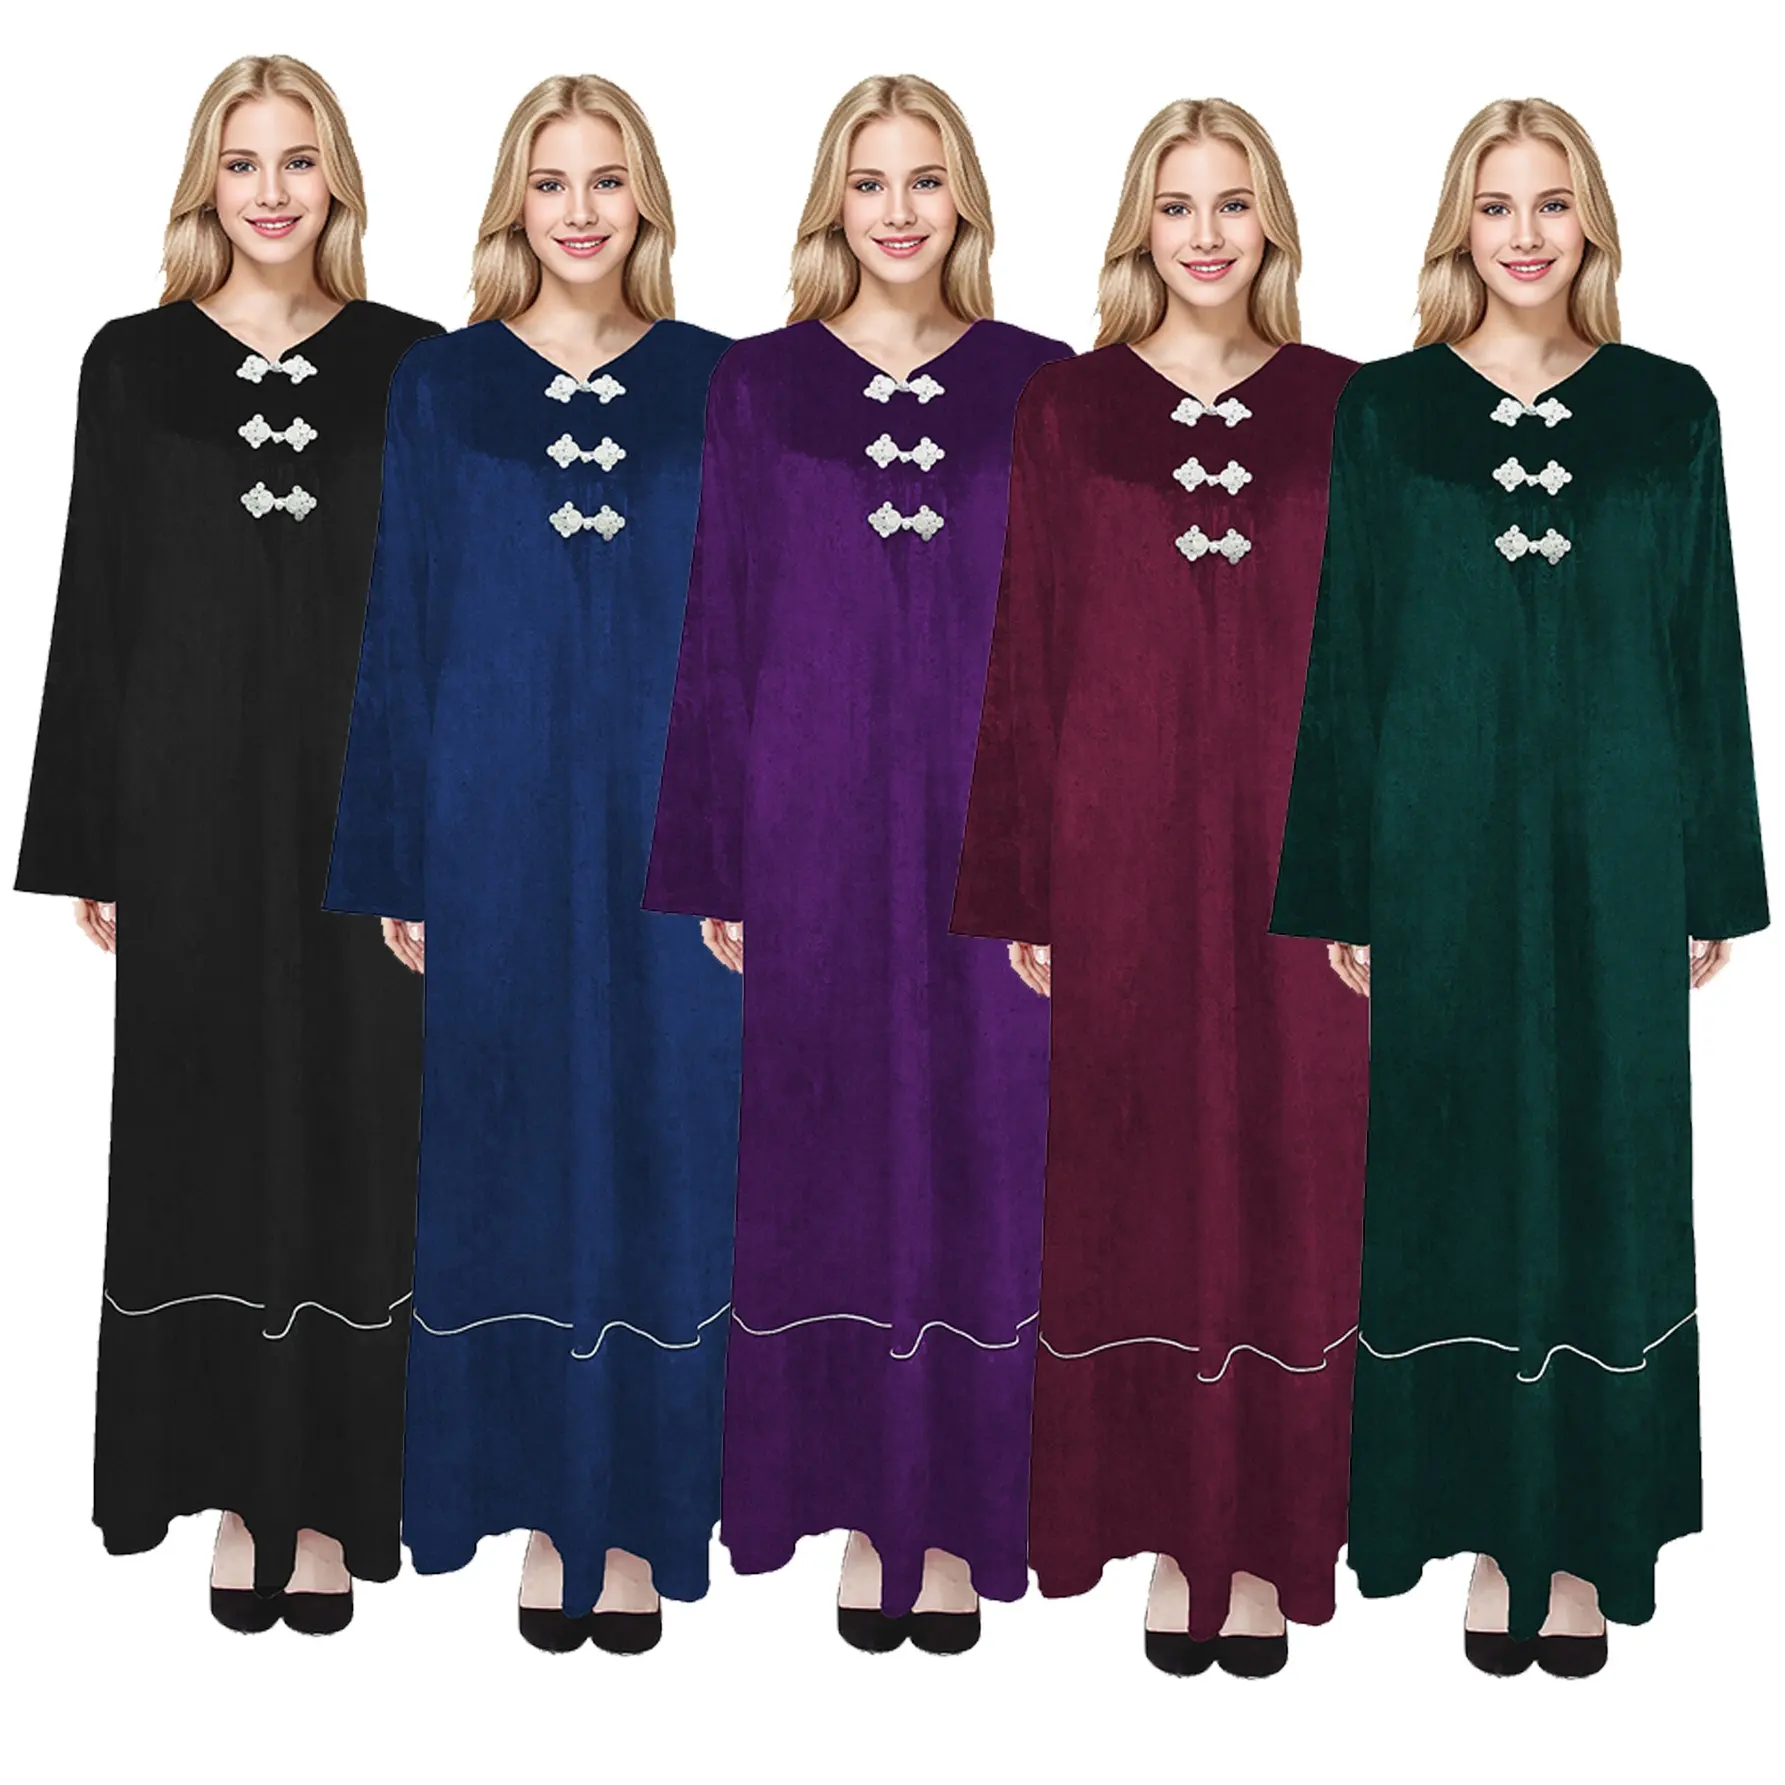 M005 חדש אביא ג 'ילבאב dubai תפילת bui kebaya שמלת המוסלמי זמש חורף גבוהה באיכות גבוהה